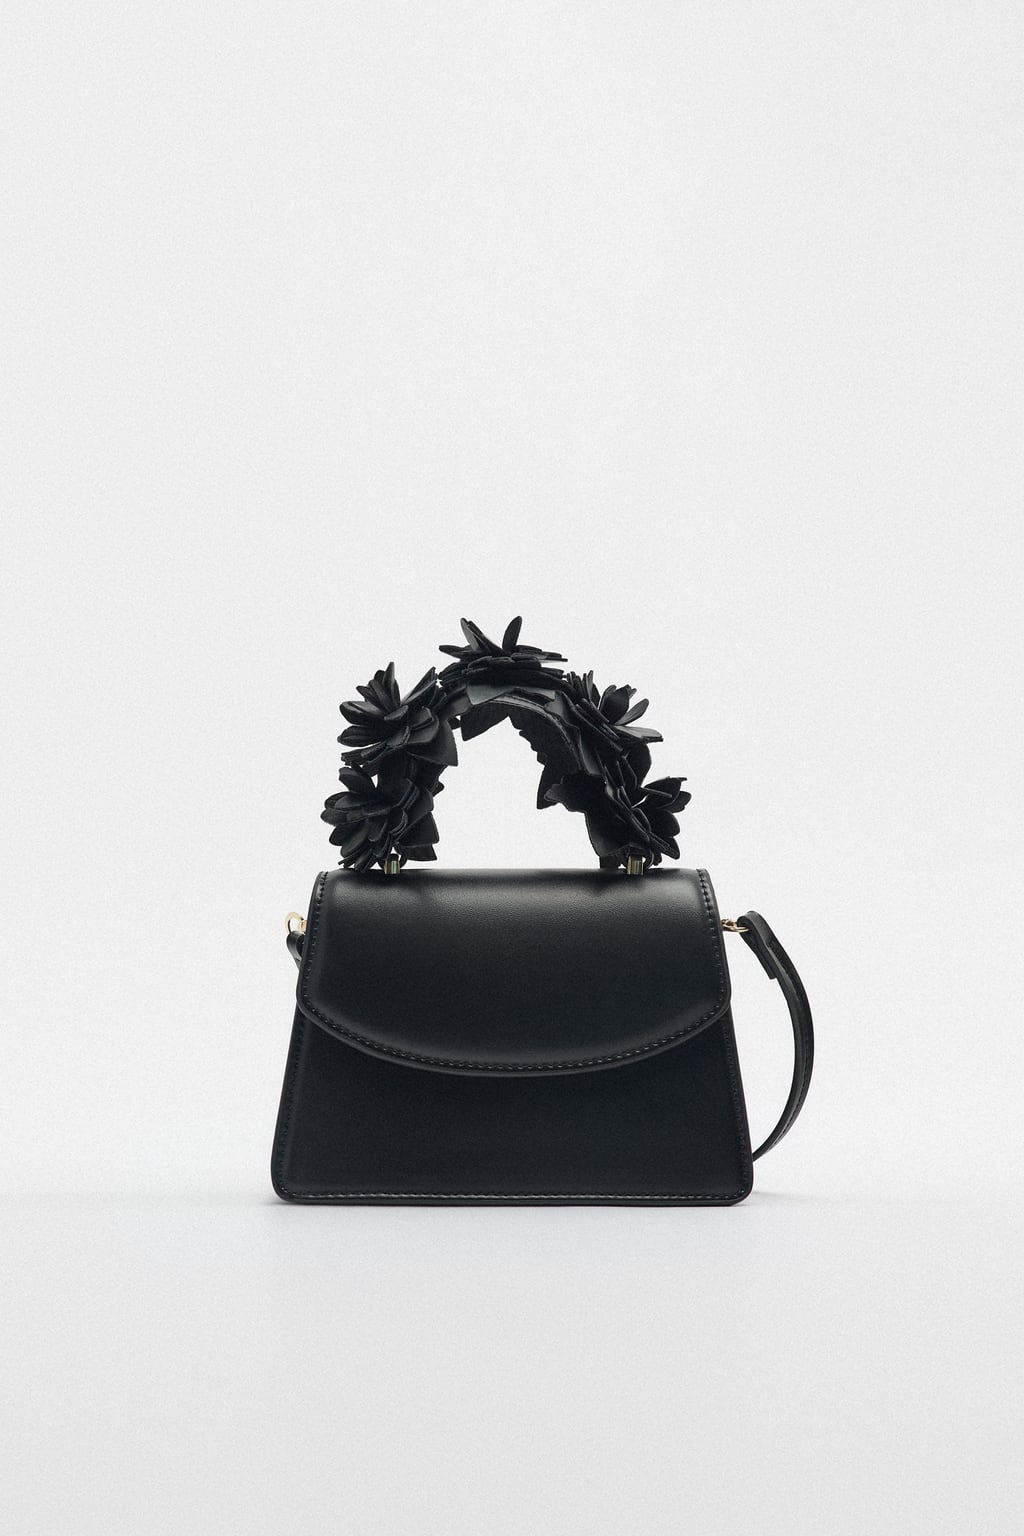 Zara Floral Mini Bag